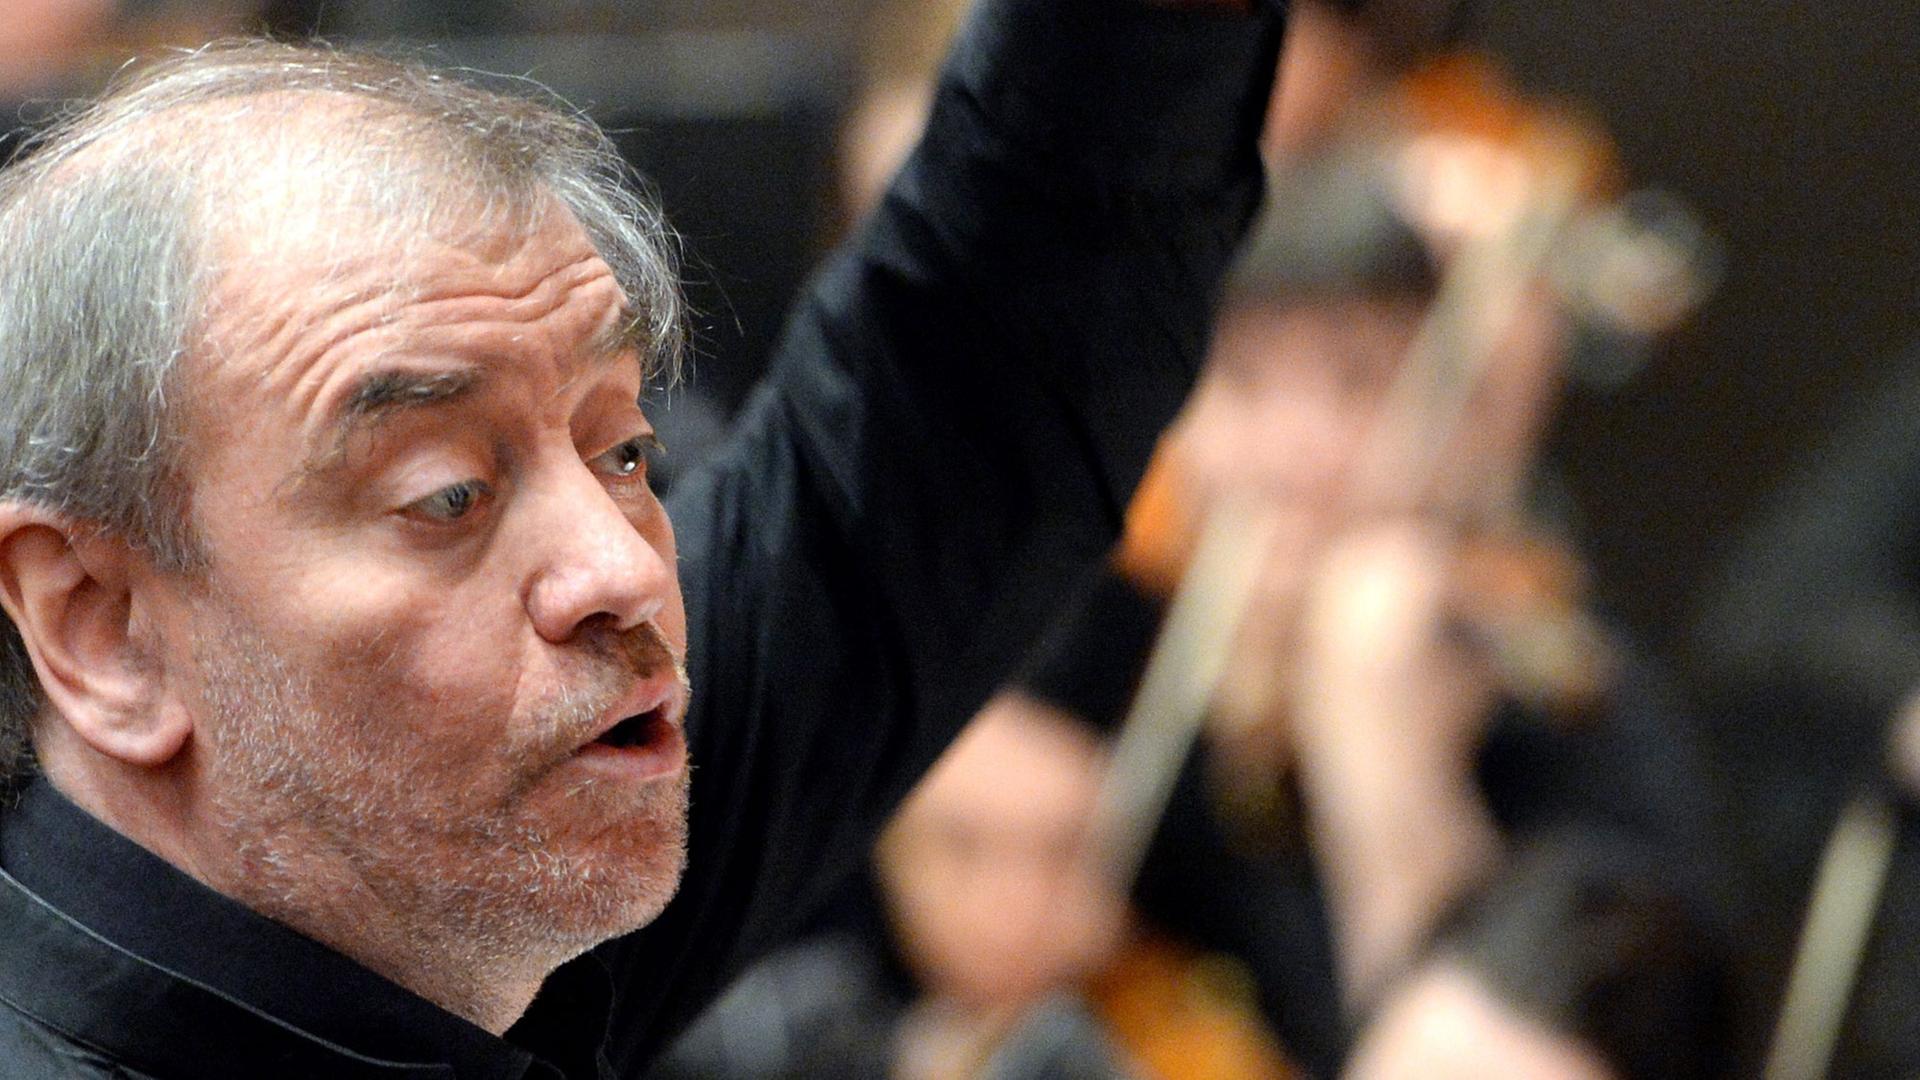 Der Intendant Valeri Gergijew dirigiert das Orchester des Mariinski-Theaters im russischen St. Petersburg.